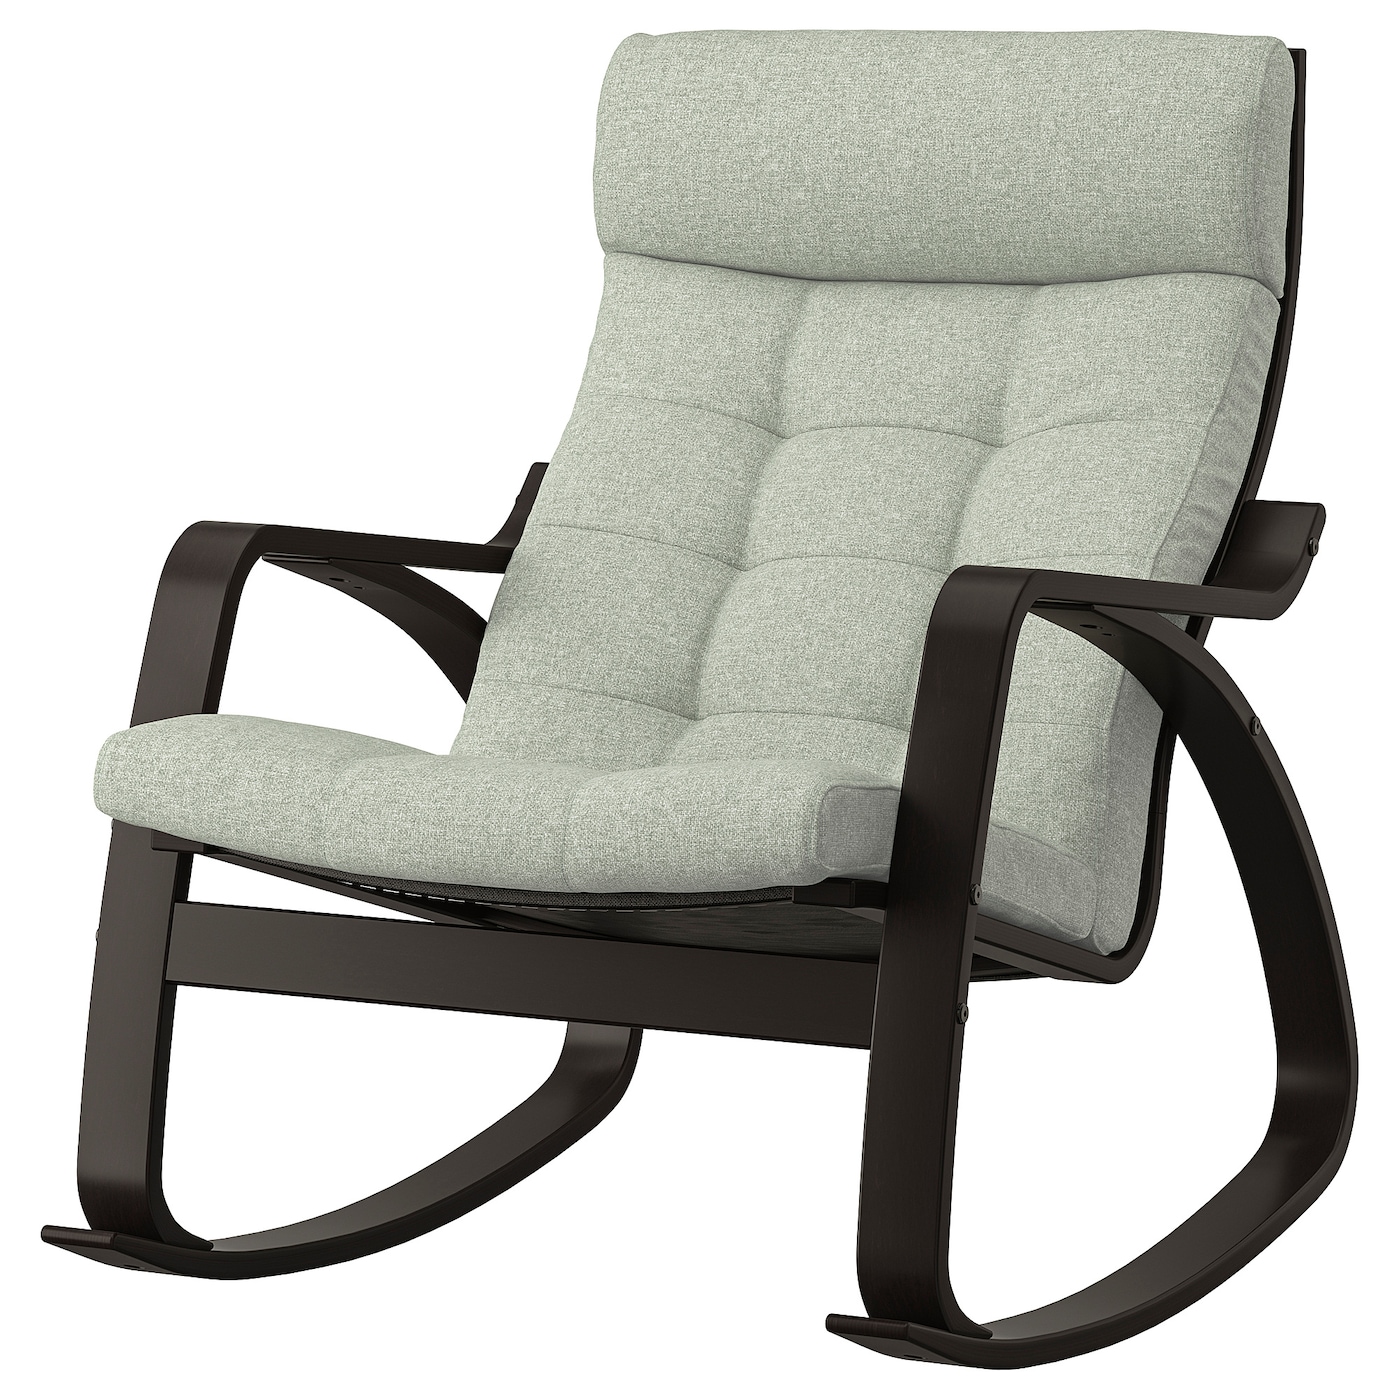 ПОЭНГ Кресло-качалка, черно-коричневый/Гуннаред светло-зеленый POÄNG IKEA кресло качалка берген